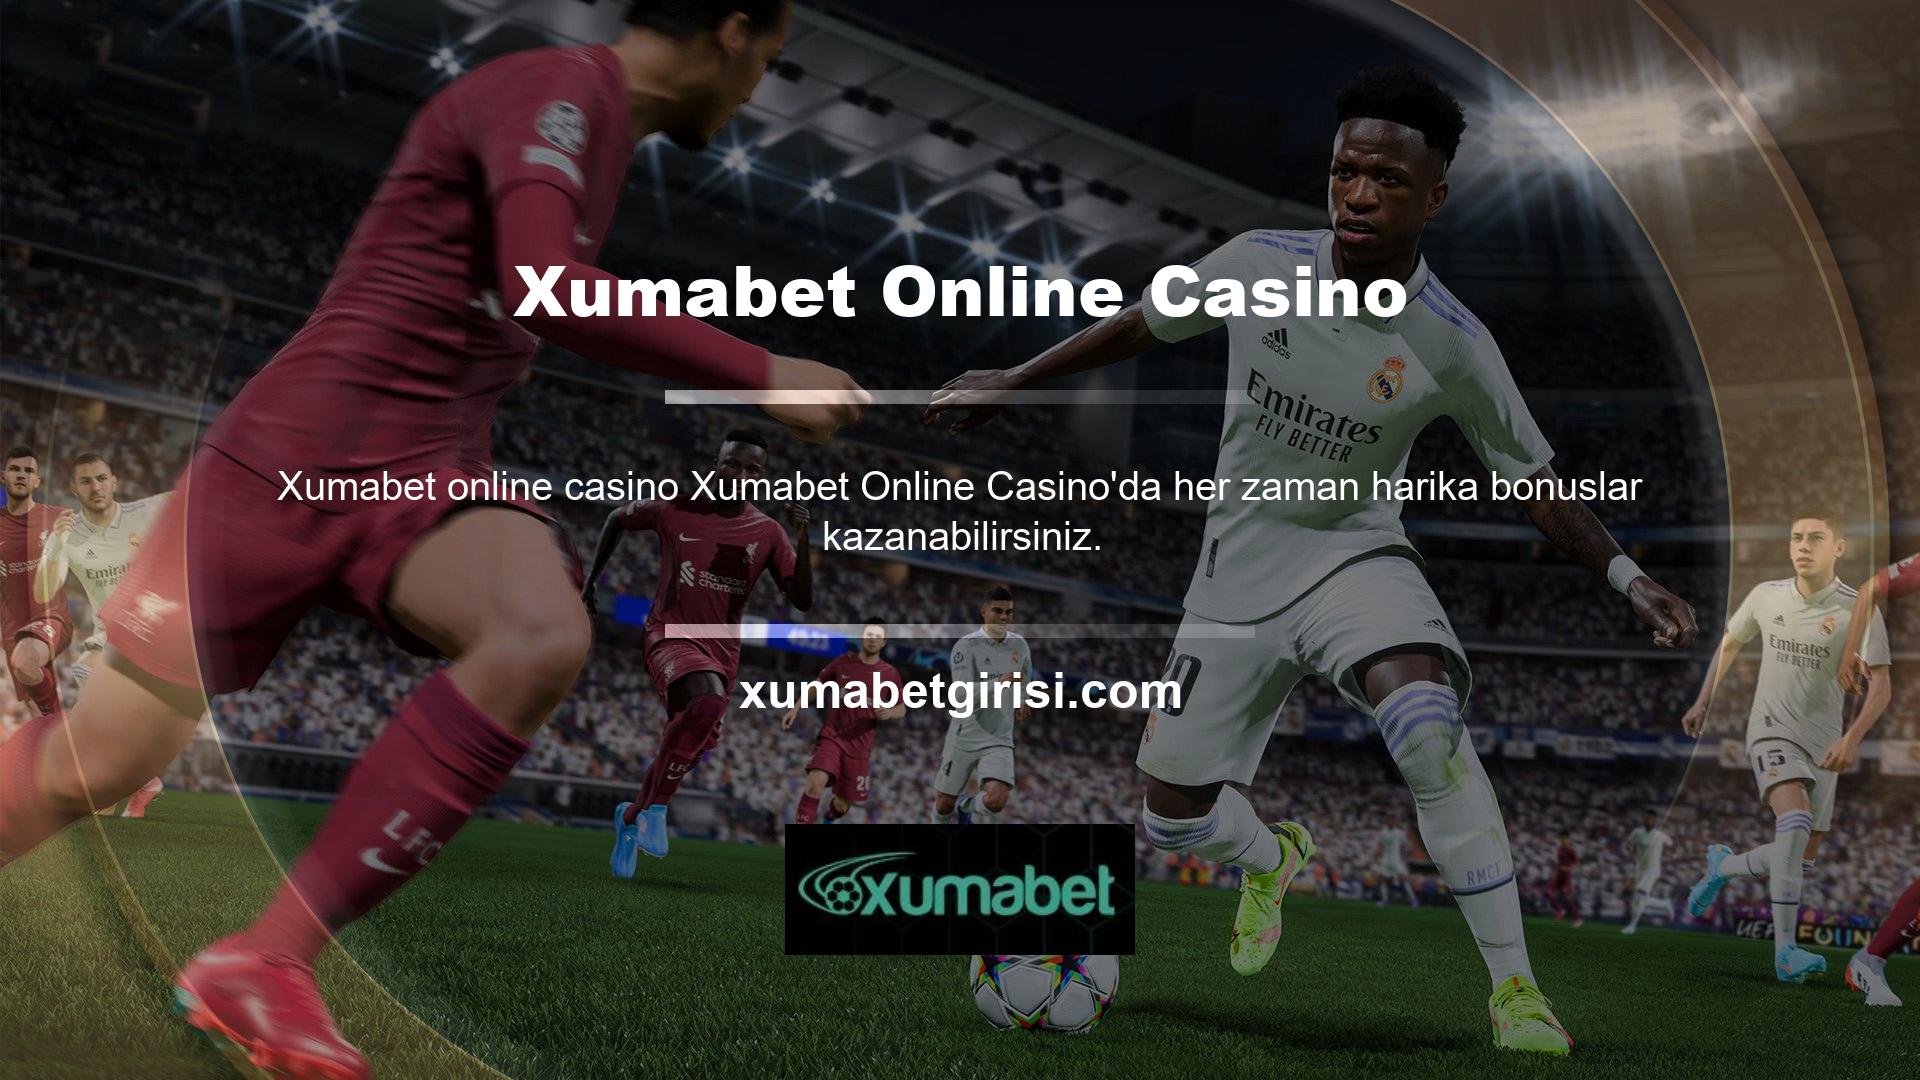 Xumabet Online Casino'da daha fazla para kazanabileceğiniz için büyük kazanabilirsiniz